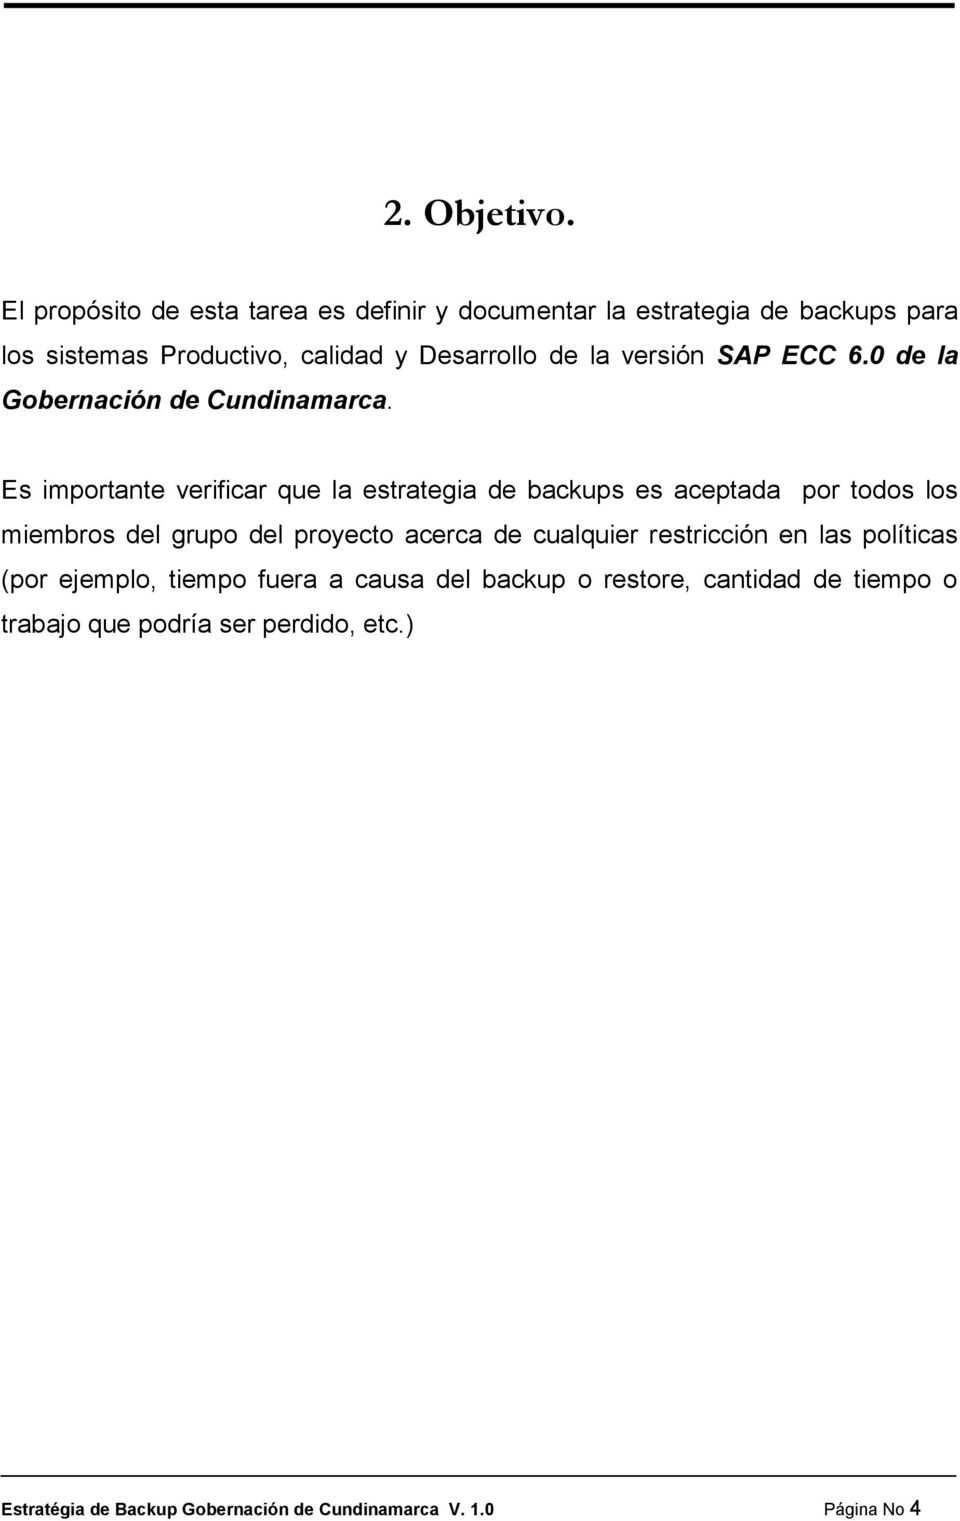 versión SAP ECC 6.0 de la Gobernación de Cundinamarca.